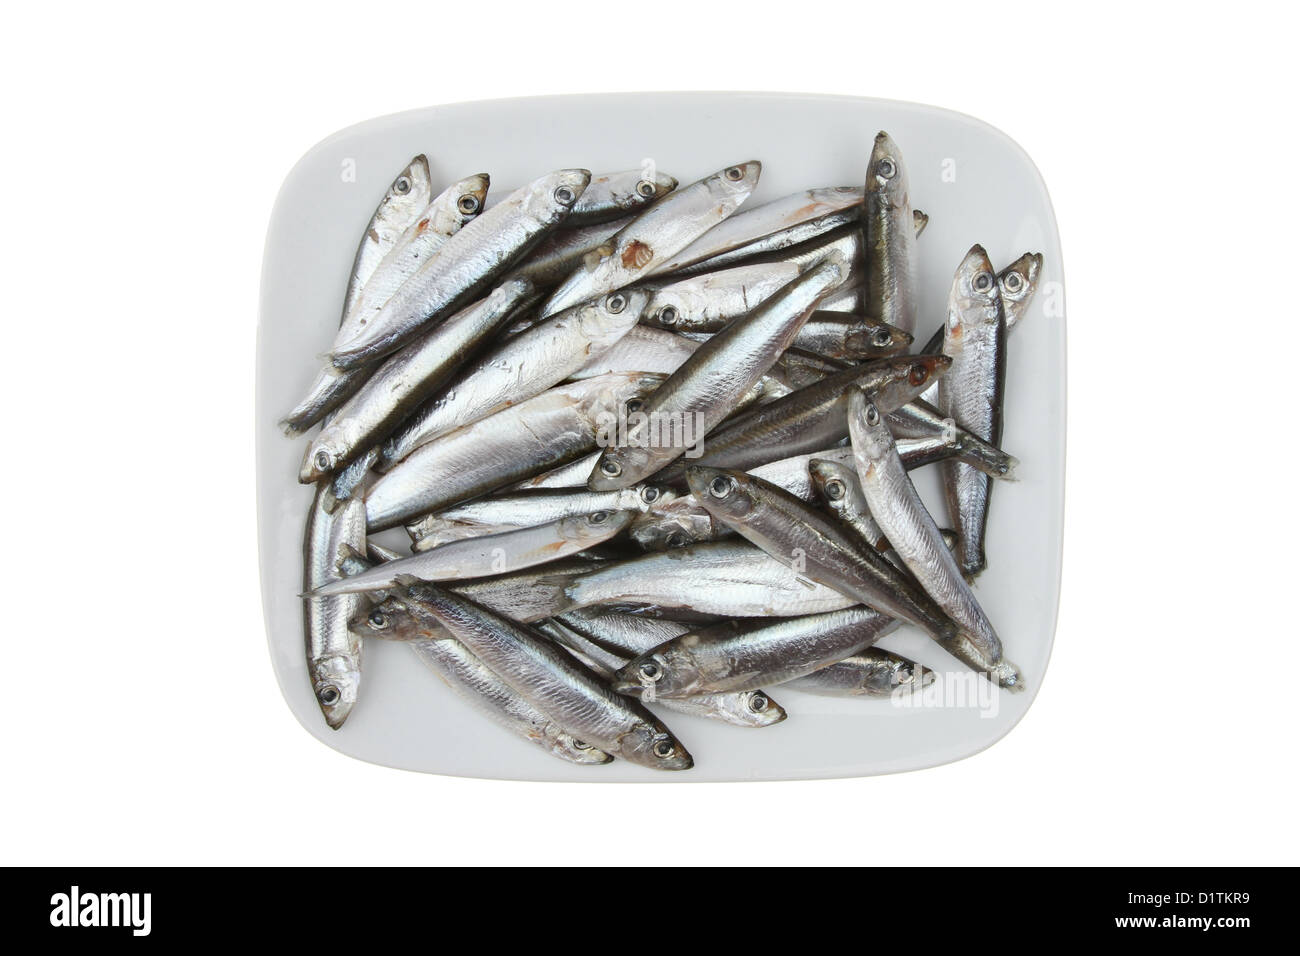 Les petits poissons crus whitebait sur une plaque isolés contre white Banque D'Images